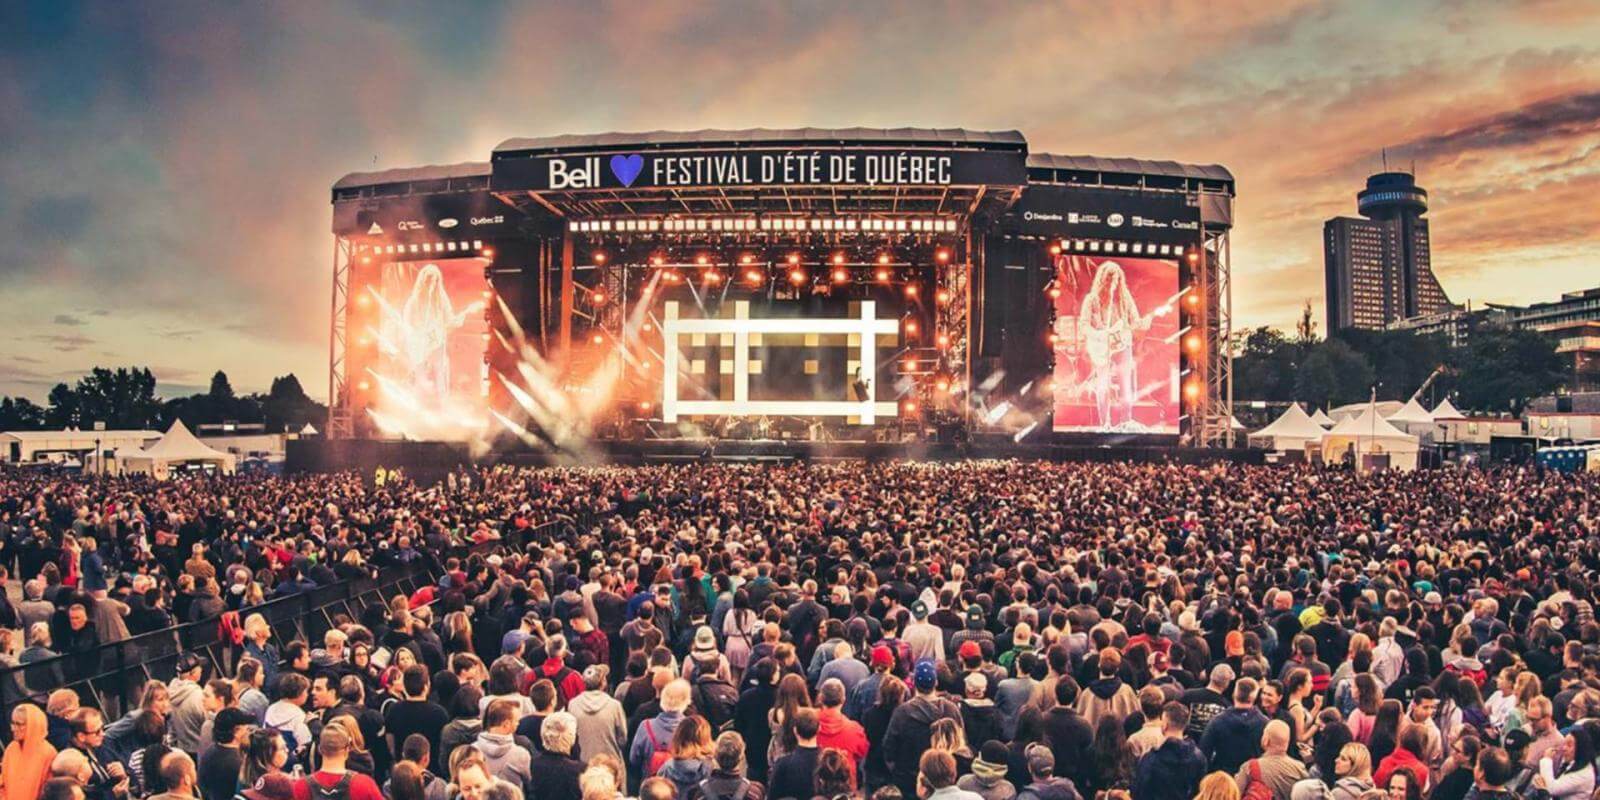 Festival d'été de Québec Events in Québec City